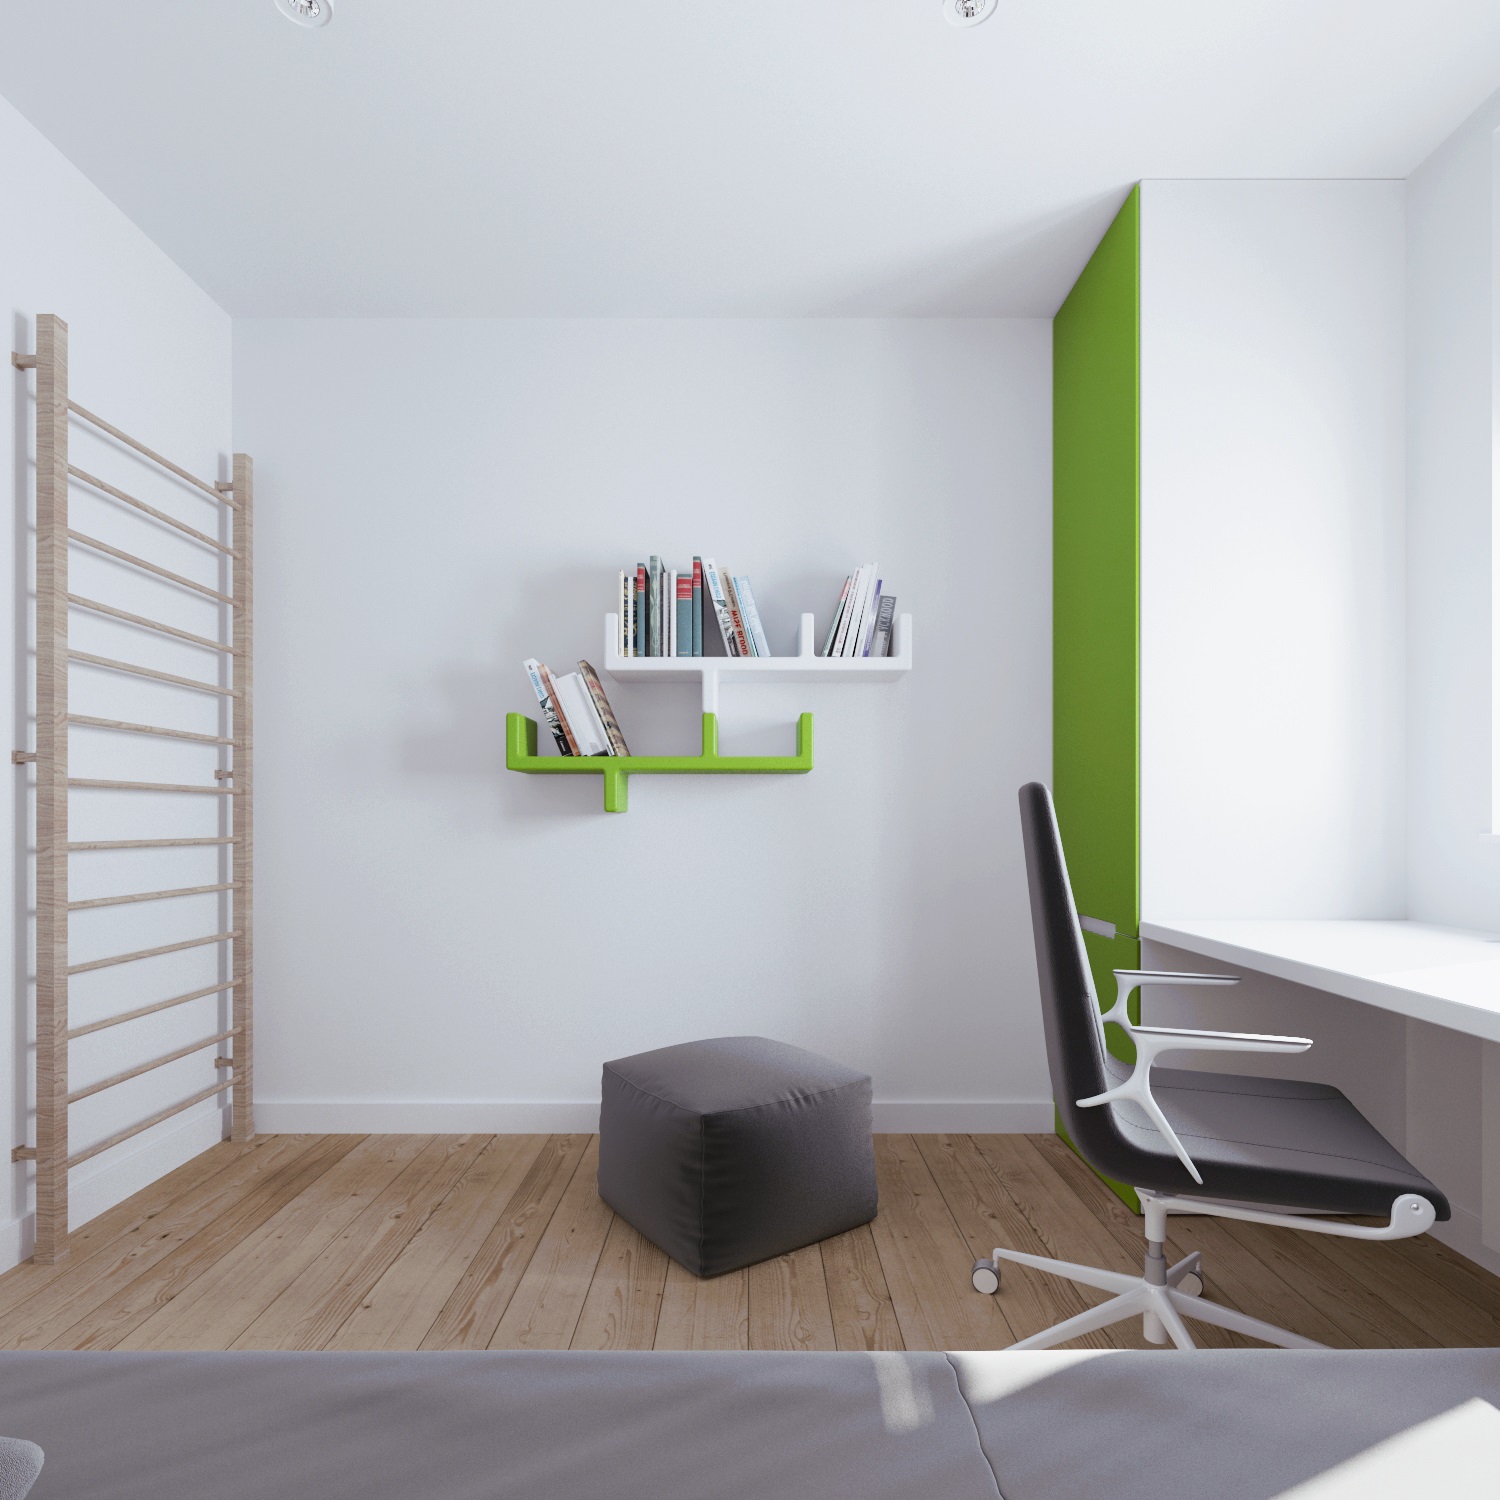 Minimalist bedroom design ideas